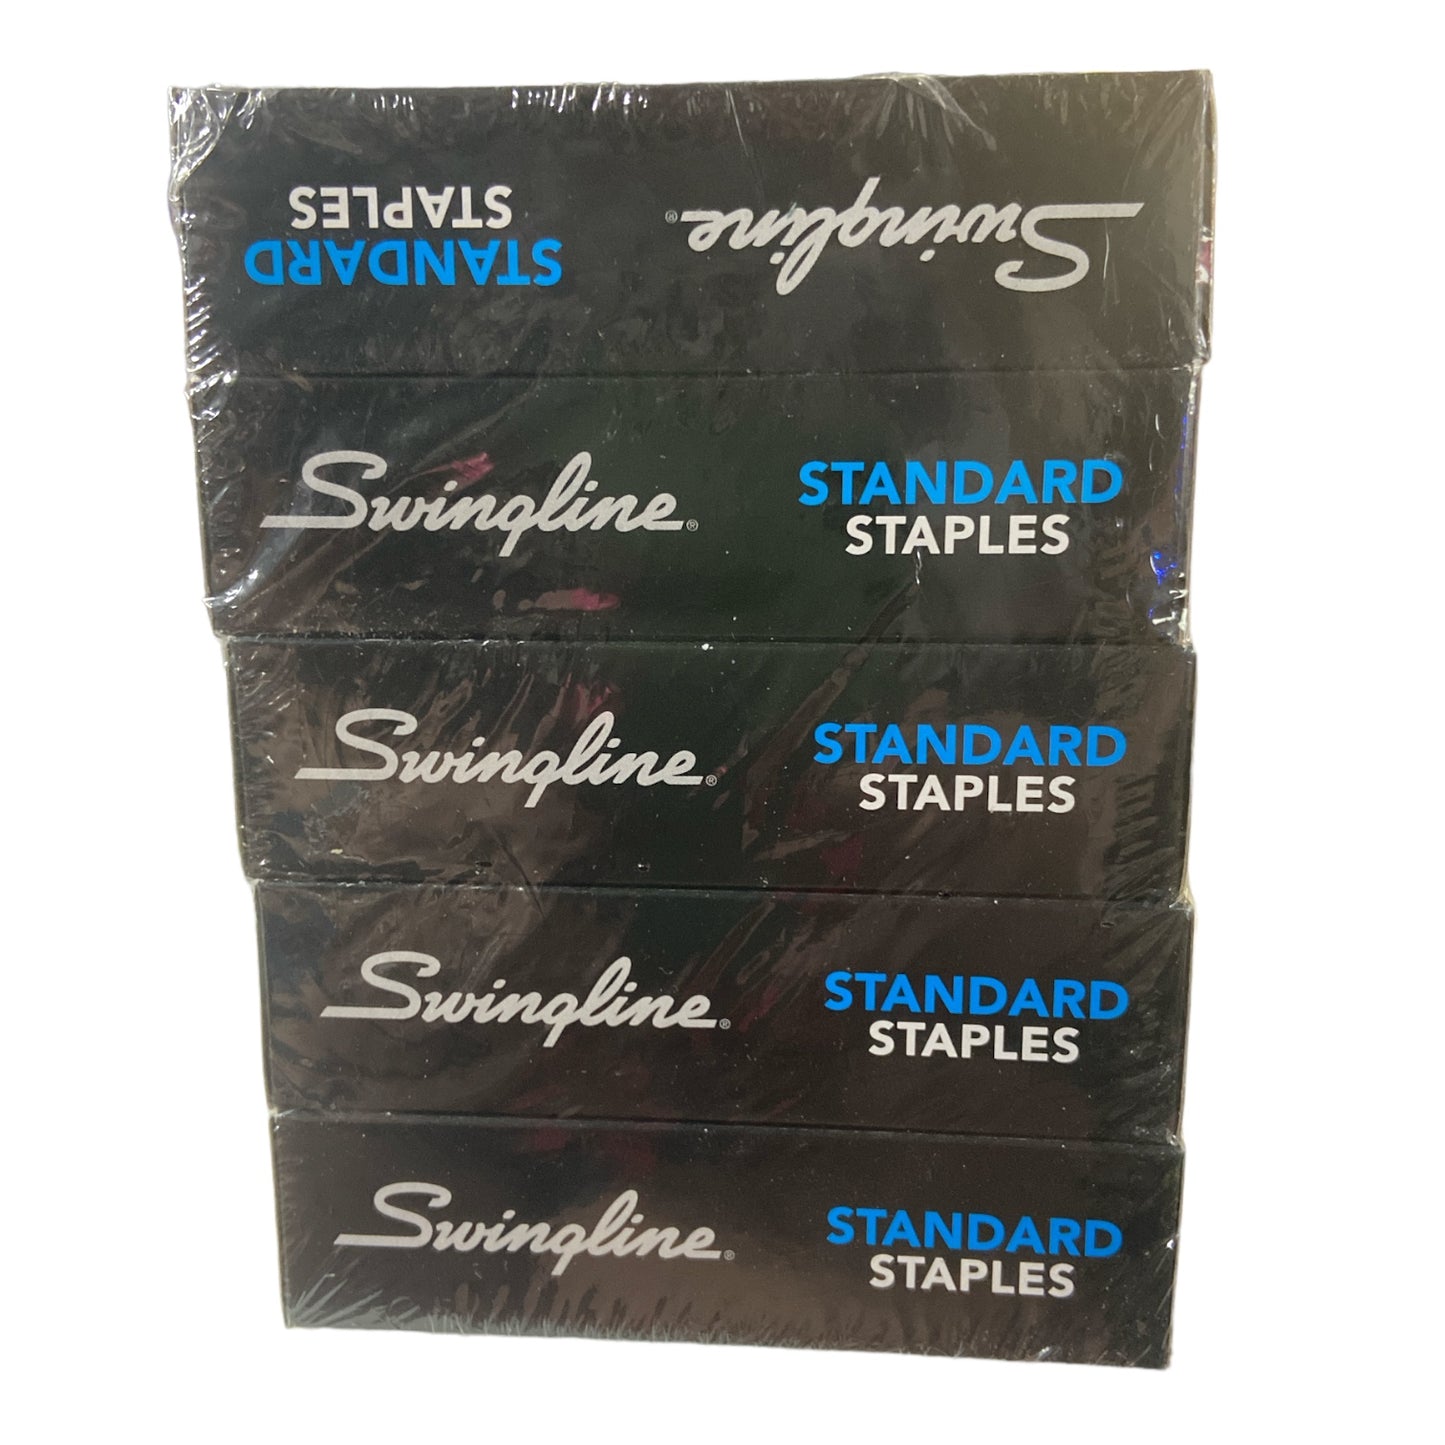 Swingline Staples, 5 Pack, Standard Staples,1/4" Length, 210/Strip, 5000/Box